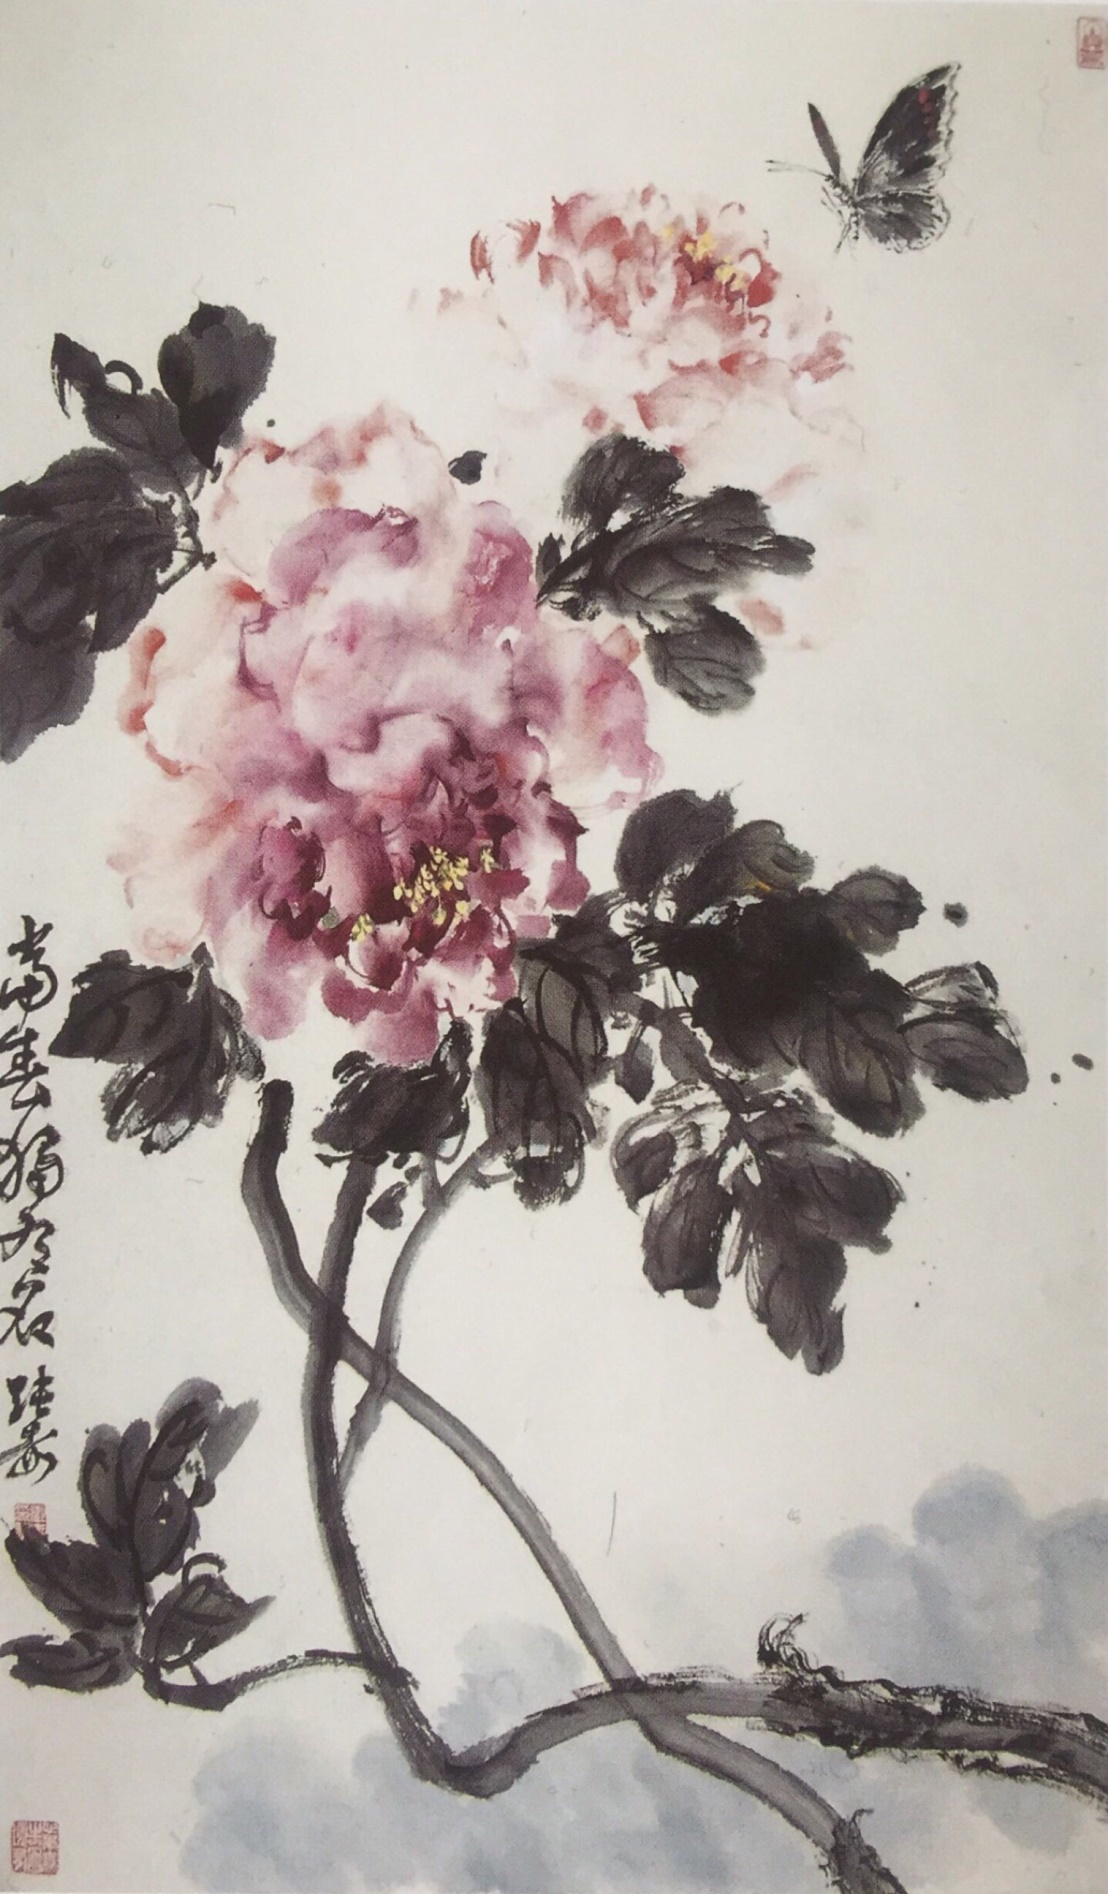 中国美术学院美术考级花鸟画考级五级(中级)示范图例。